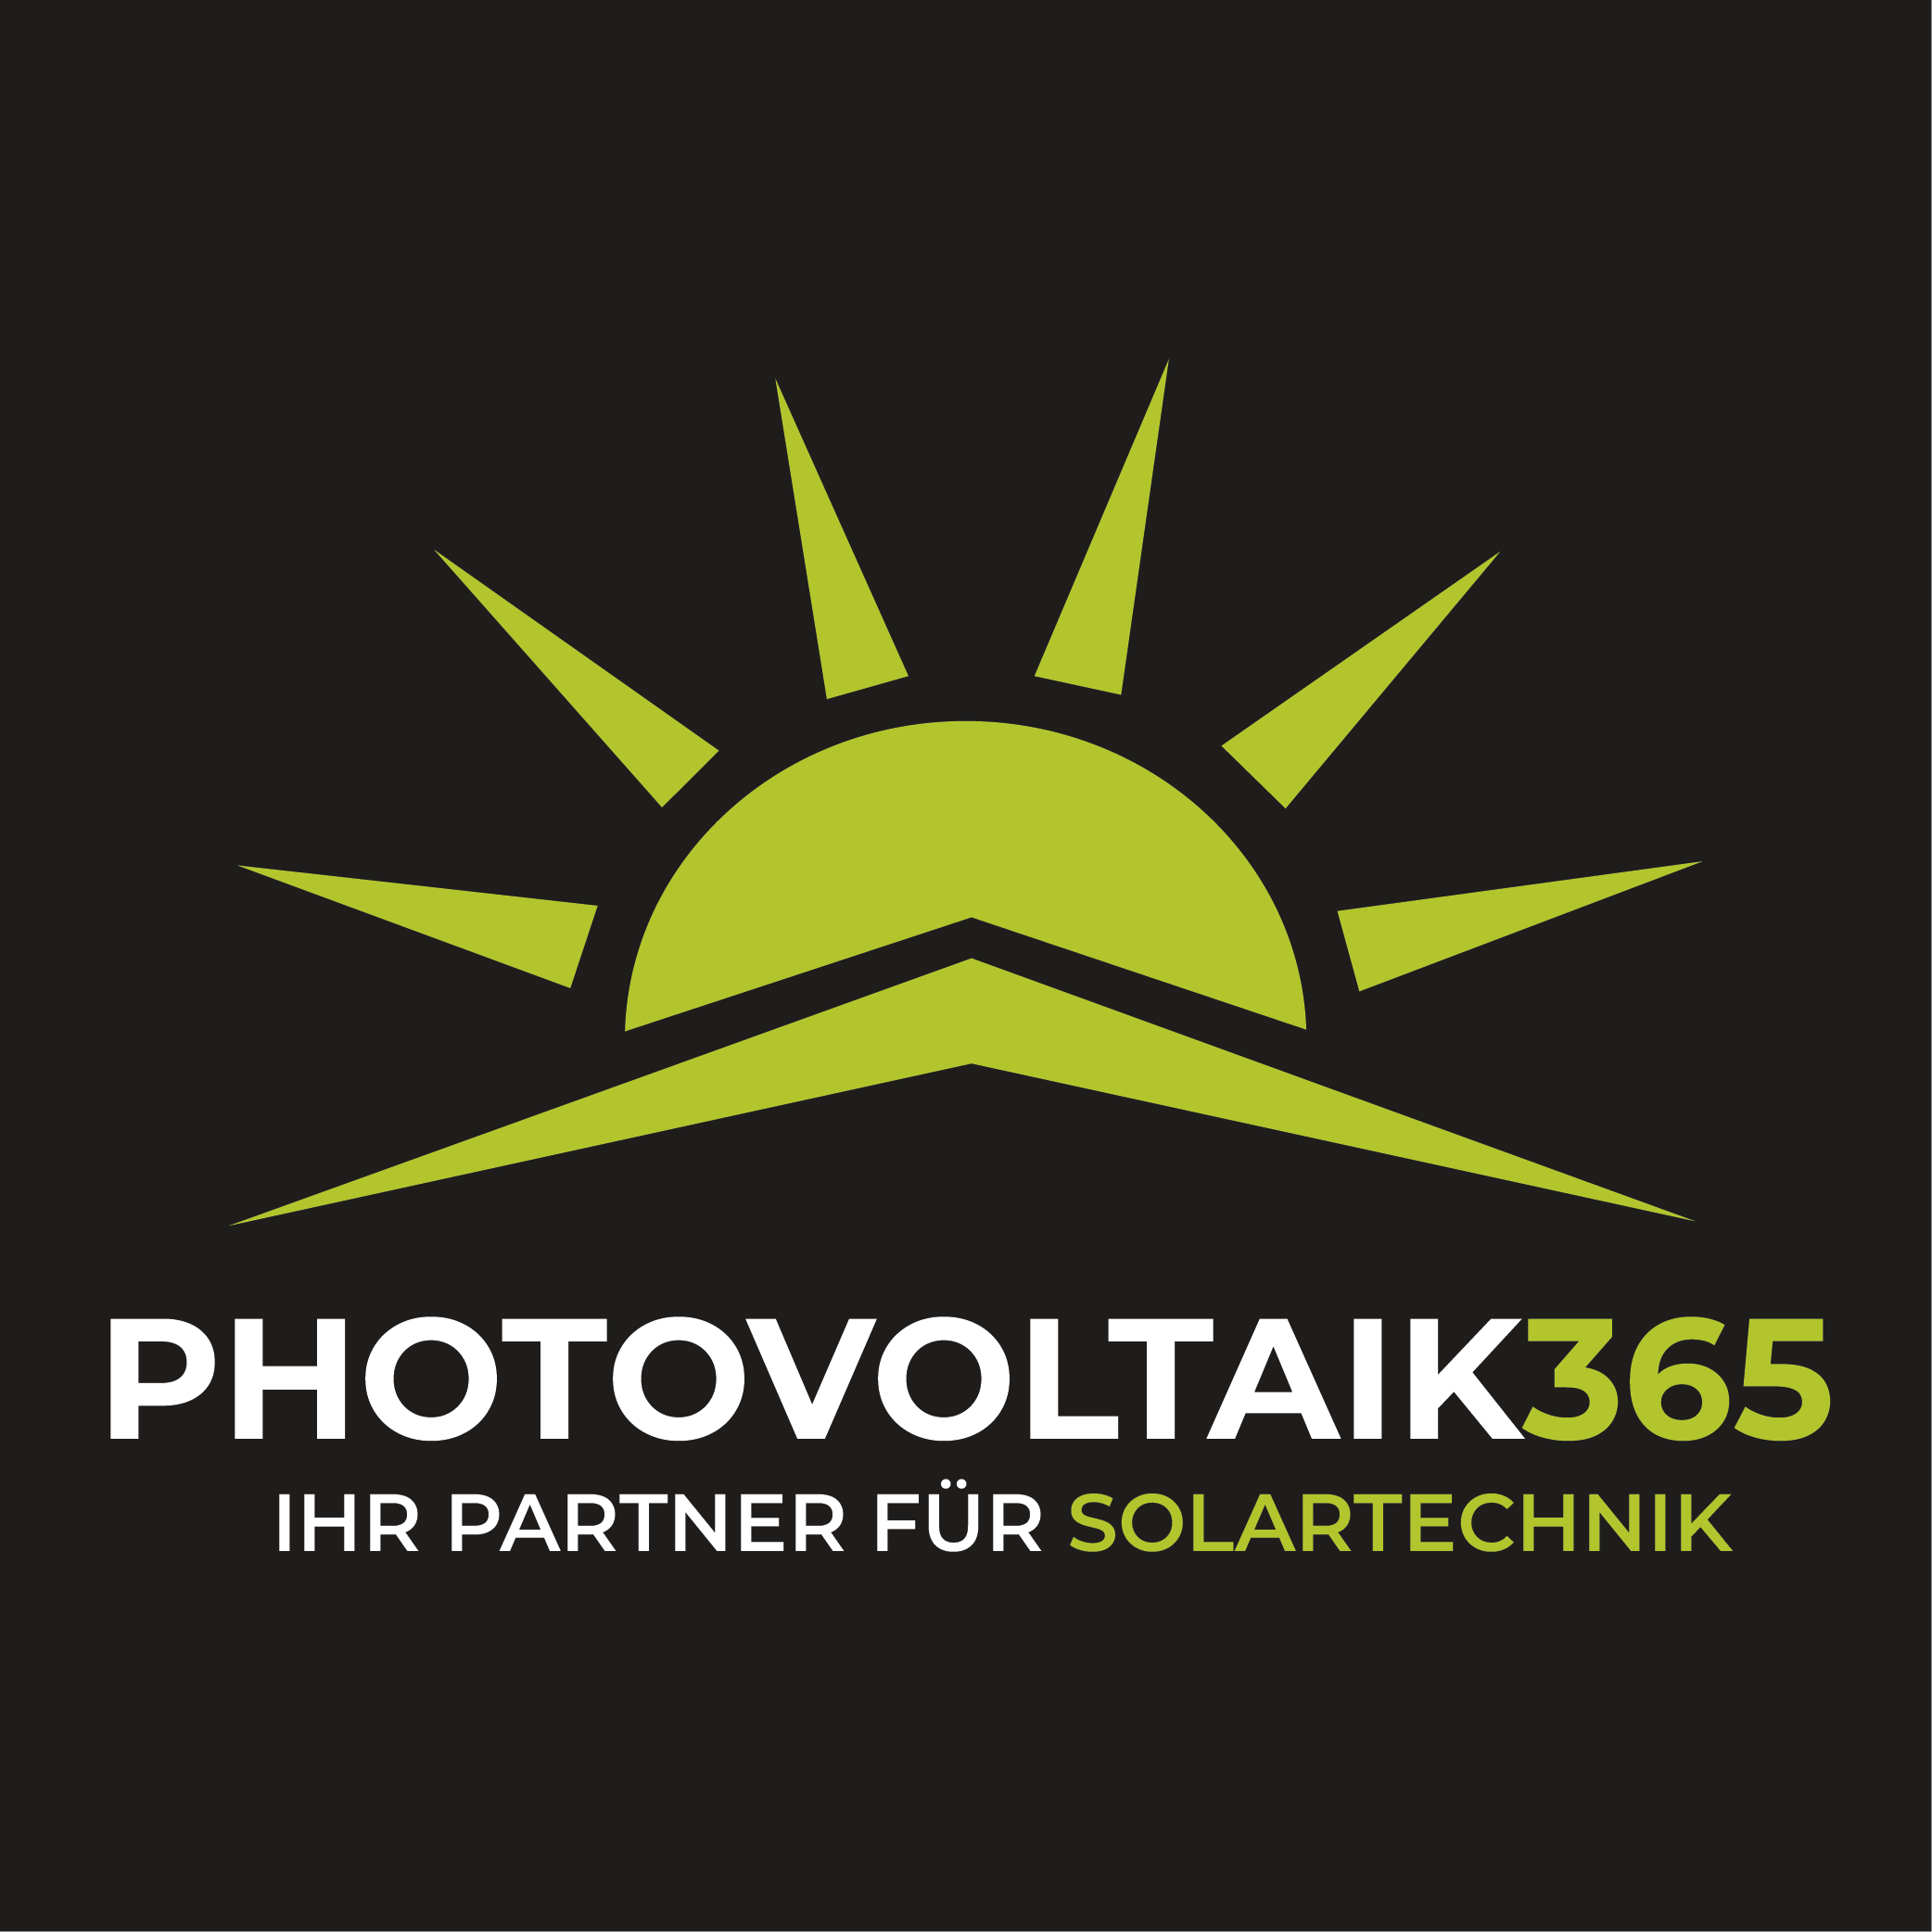 (c) Photovoltaik365.de